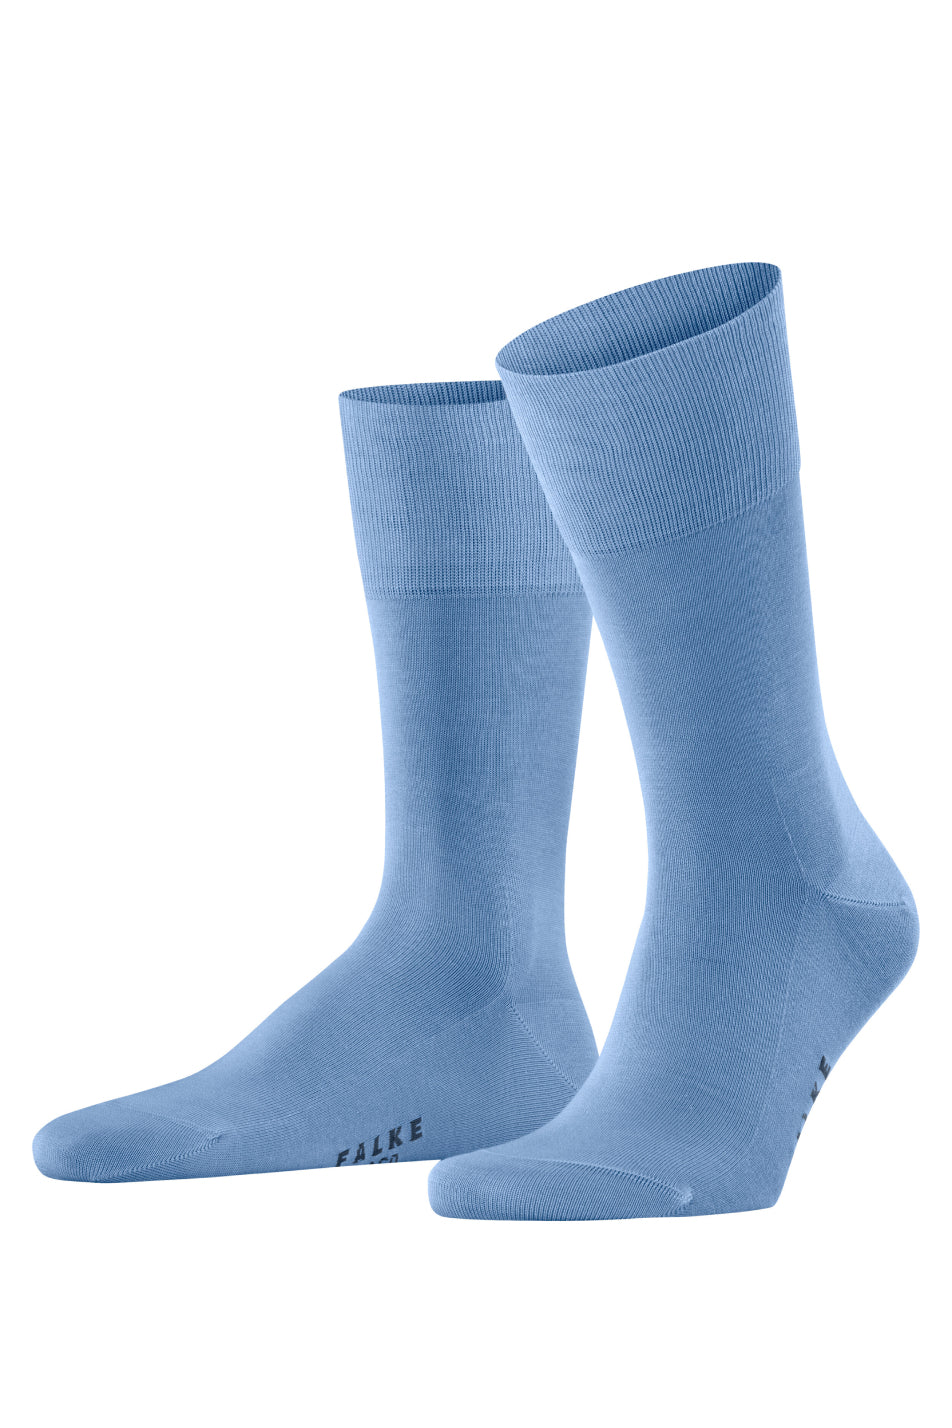 Falke Tiago Men's Sock